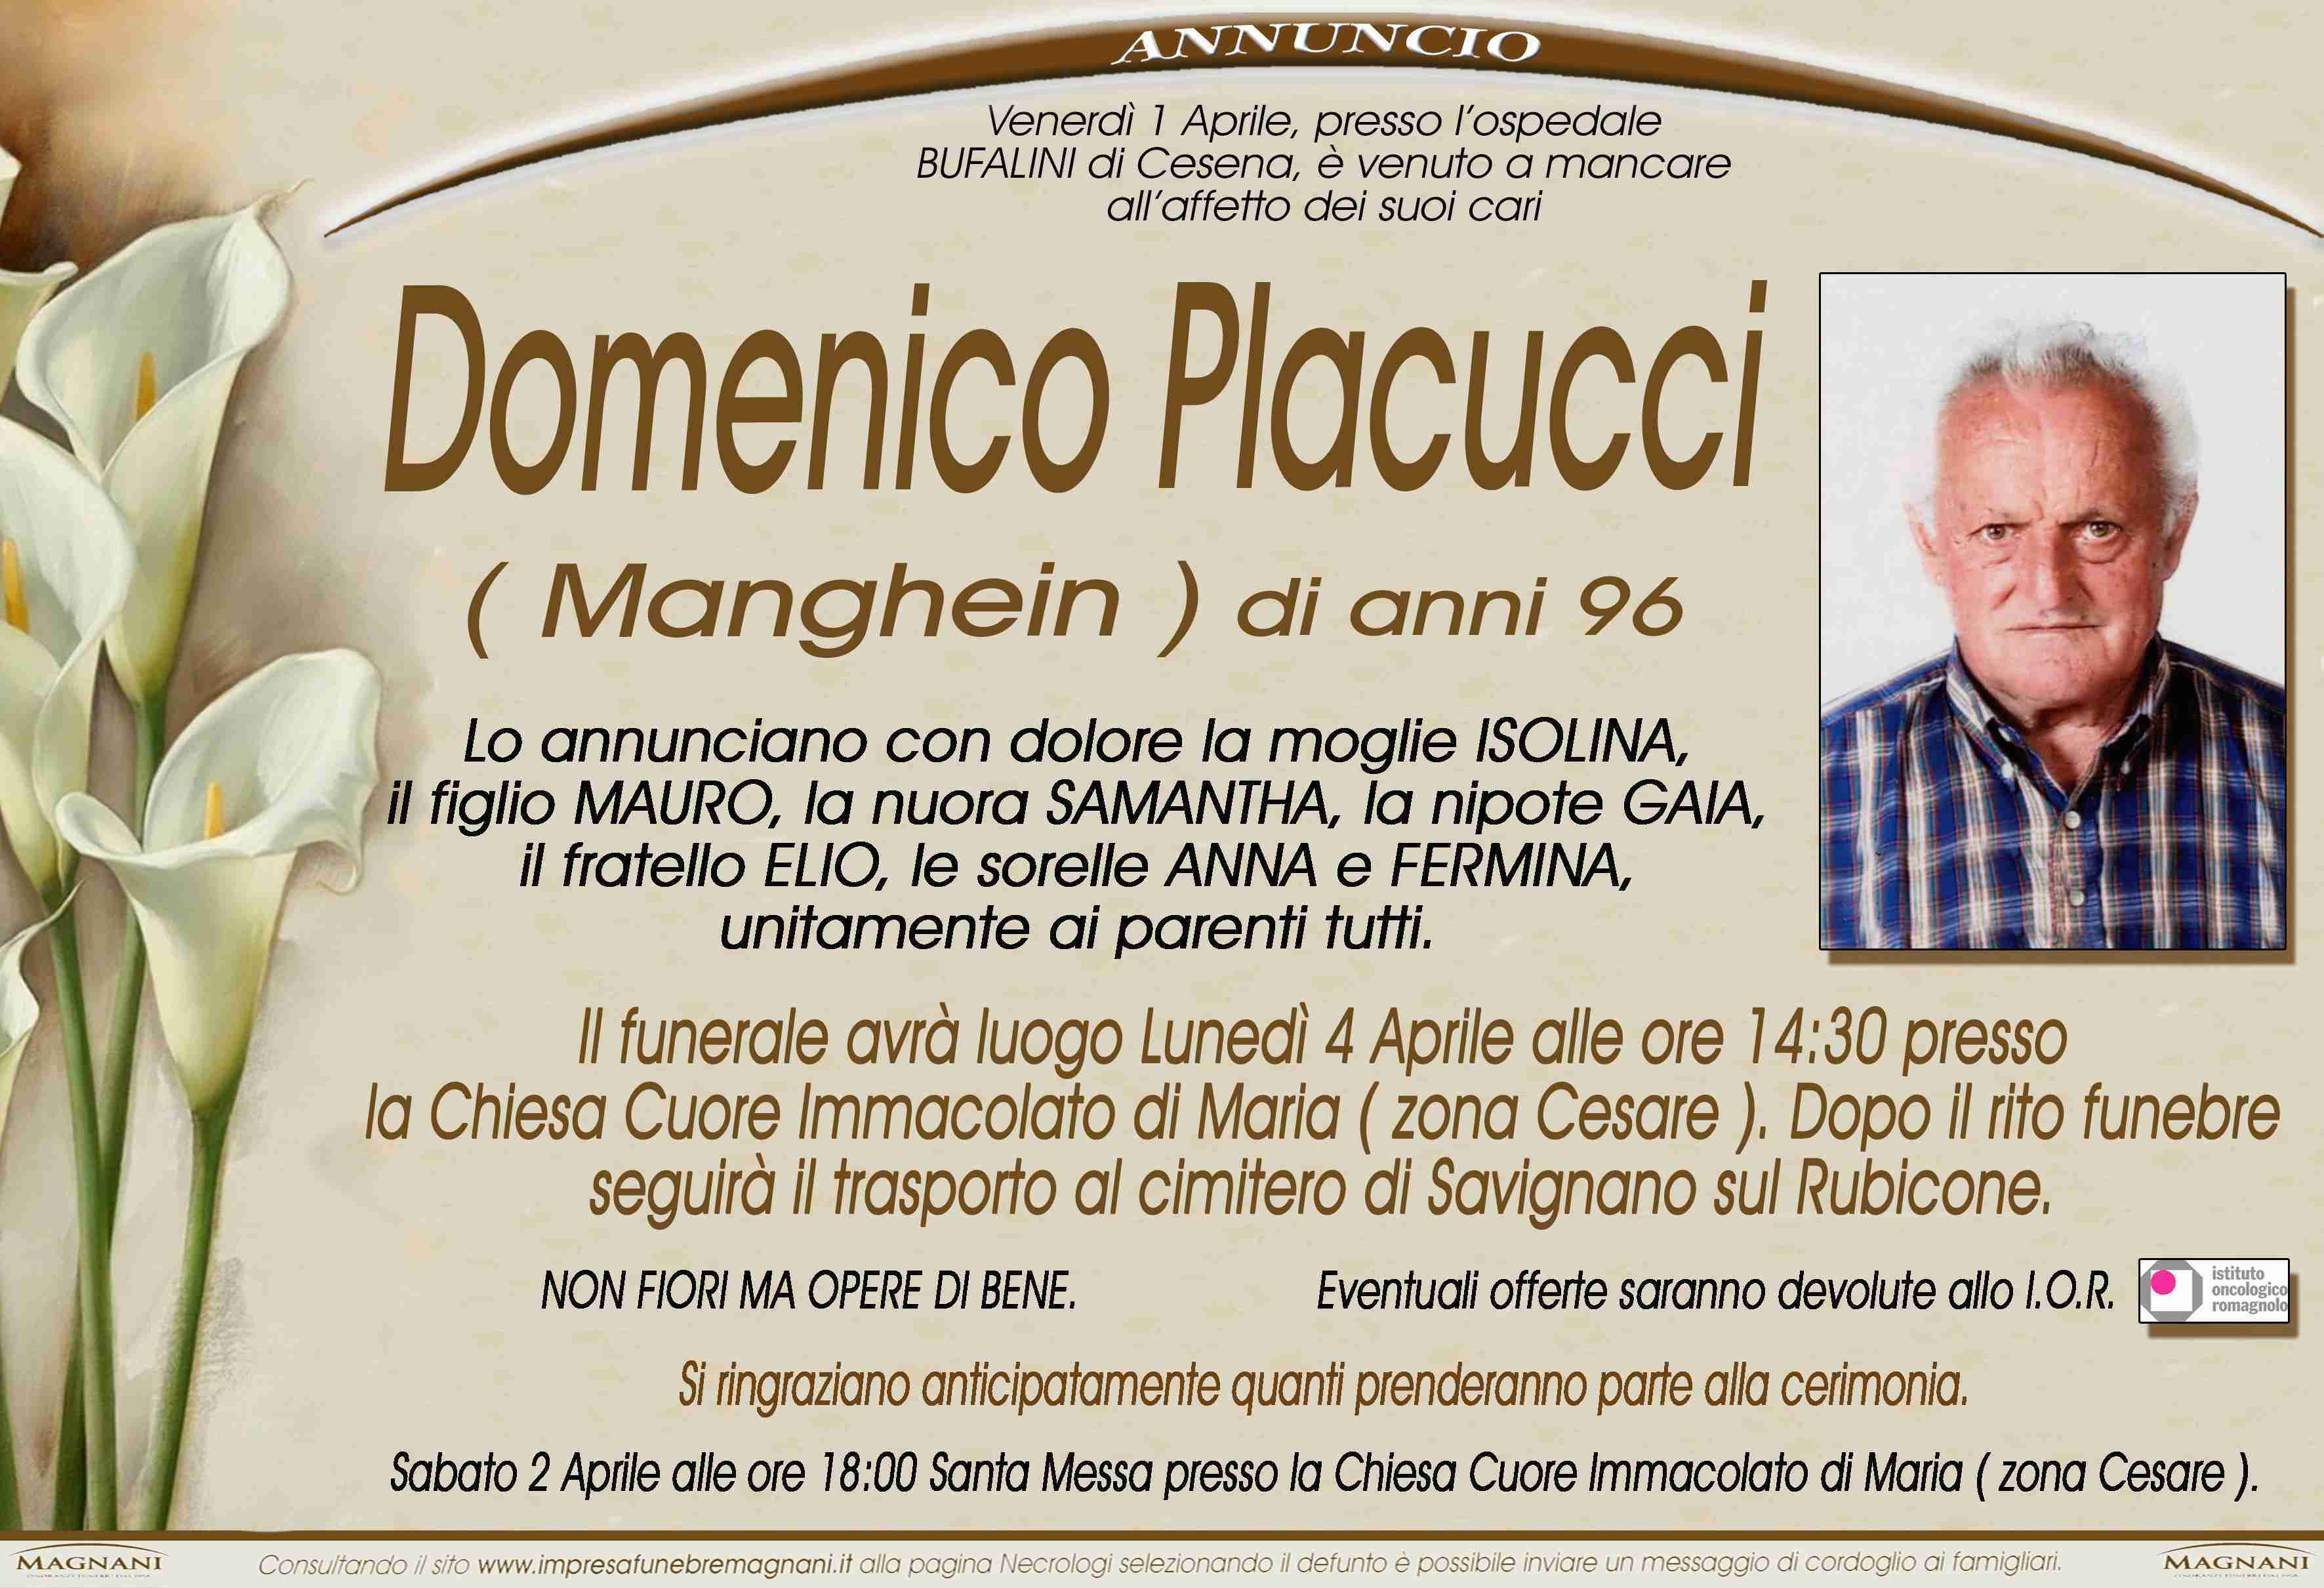 Domenico Placucci